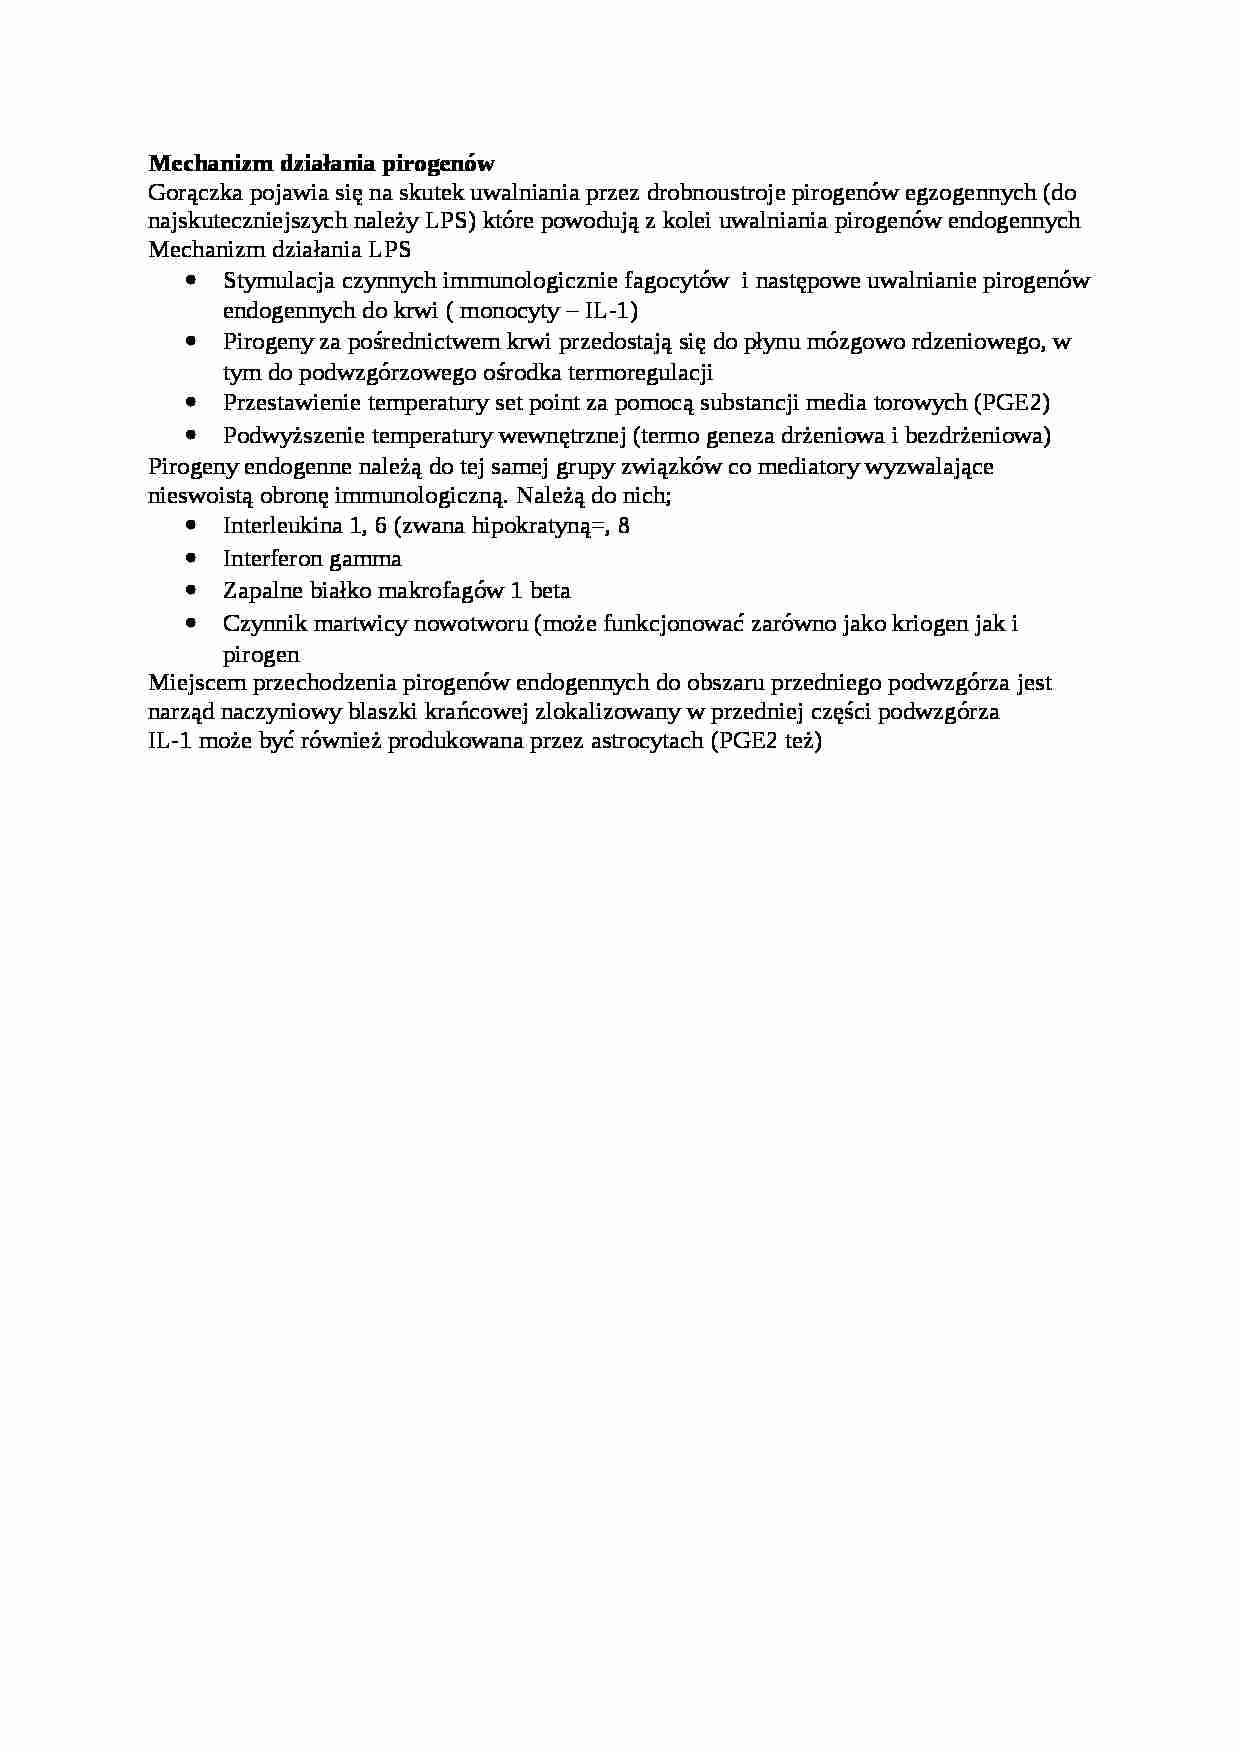 Mechanizmy działania pirogenów - omówienie, sem I-IV - strona 1